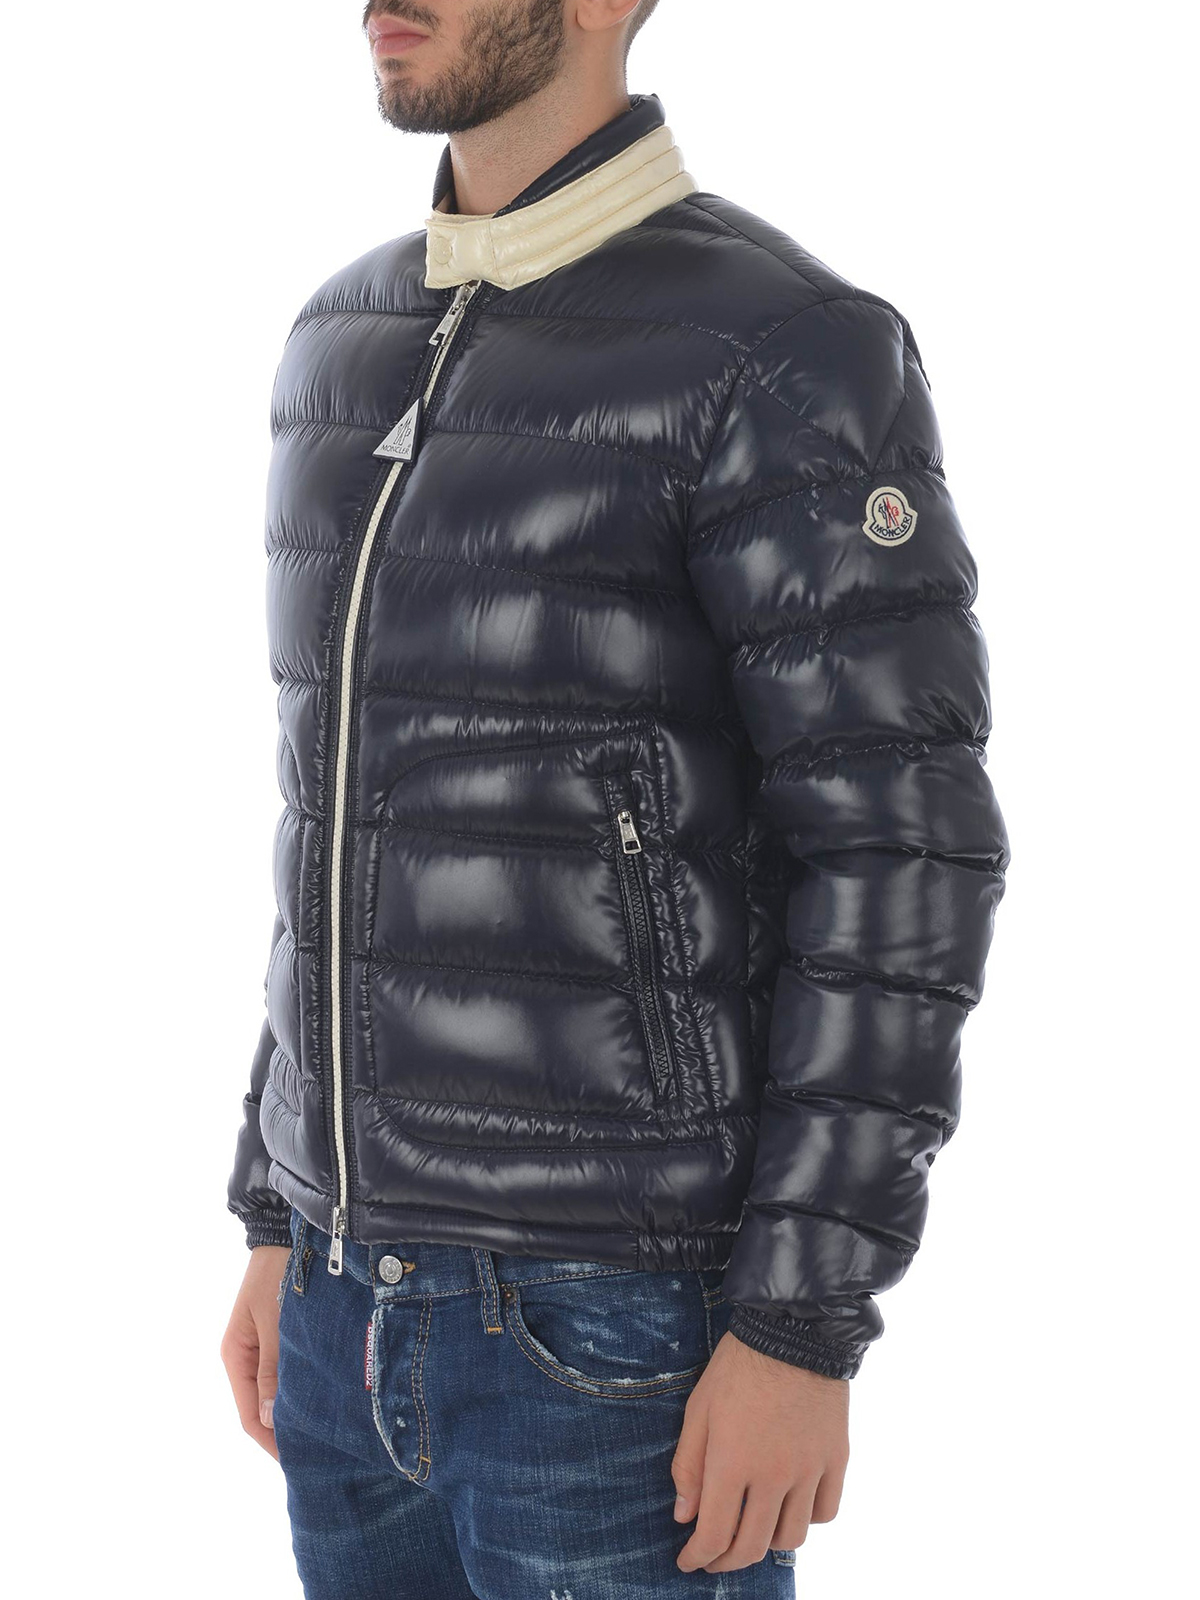 nylon padded jacket - padded jackets 